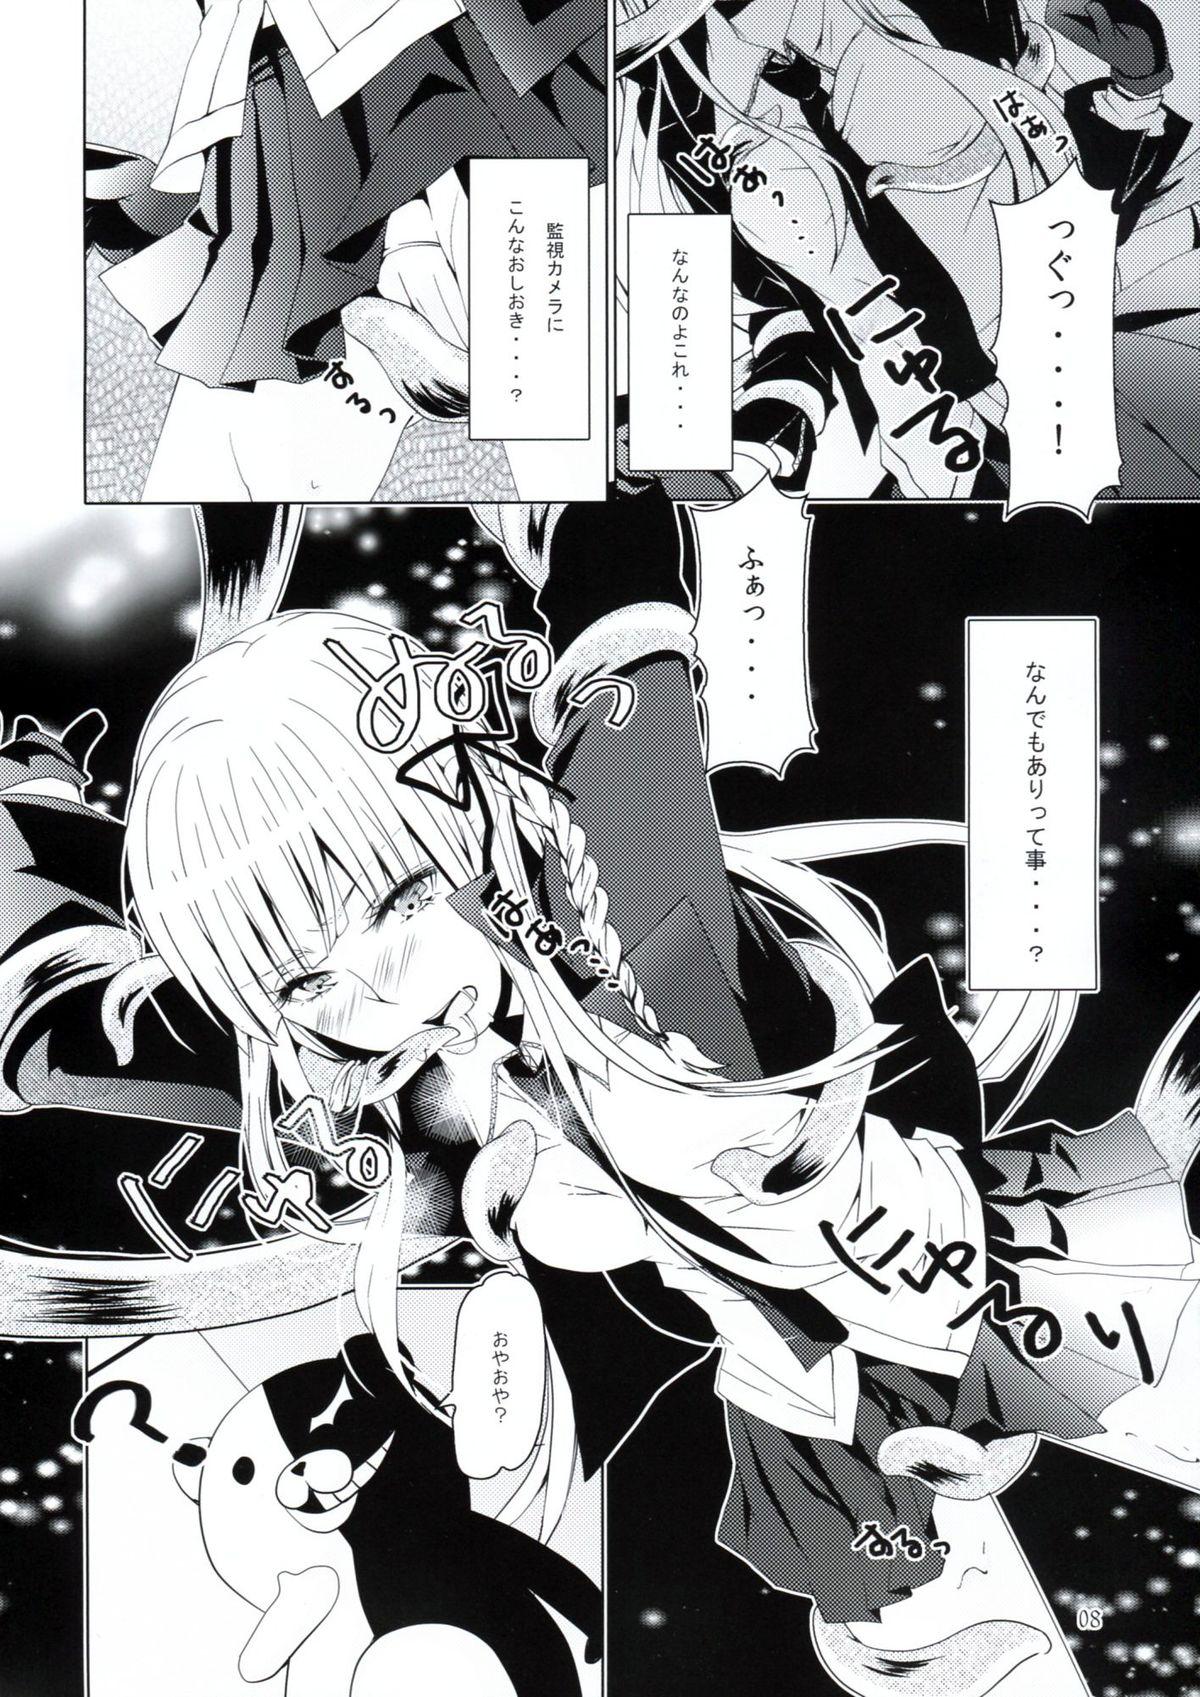 Gozo Yukari no Me ni wa Kiri ga Furu - Danganronpa Cocksucker - Page 7